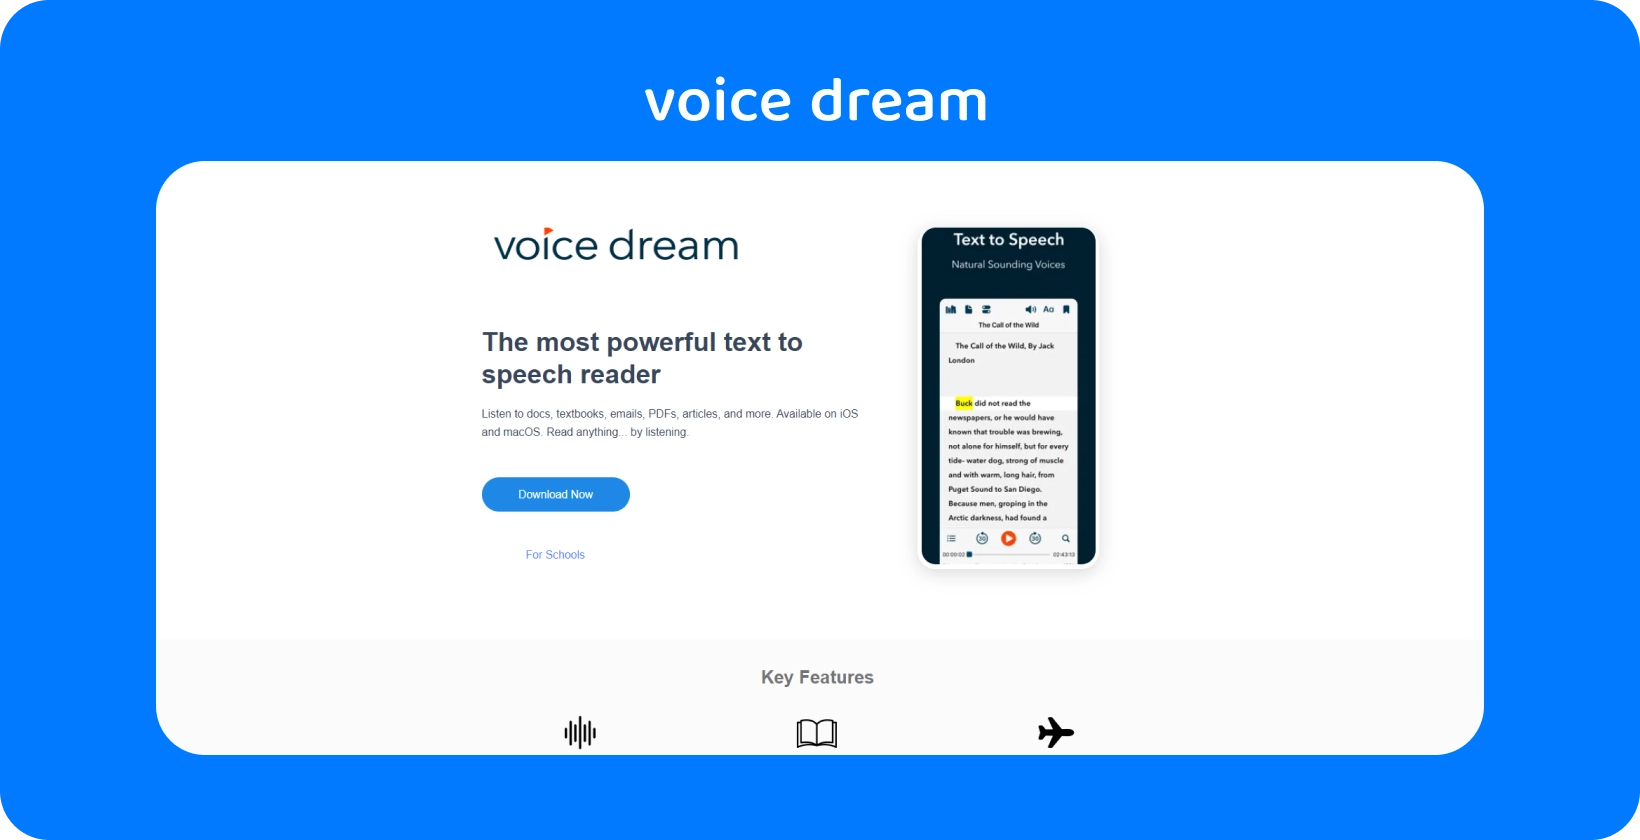 Giao diện ứng dụng Voice Dream giới thiệu trình đọc văn bản thành giọng nói mạnh mẽ cho các tài liệu khác nhau trên thiết bị di động.